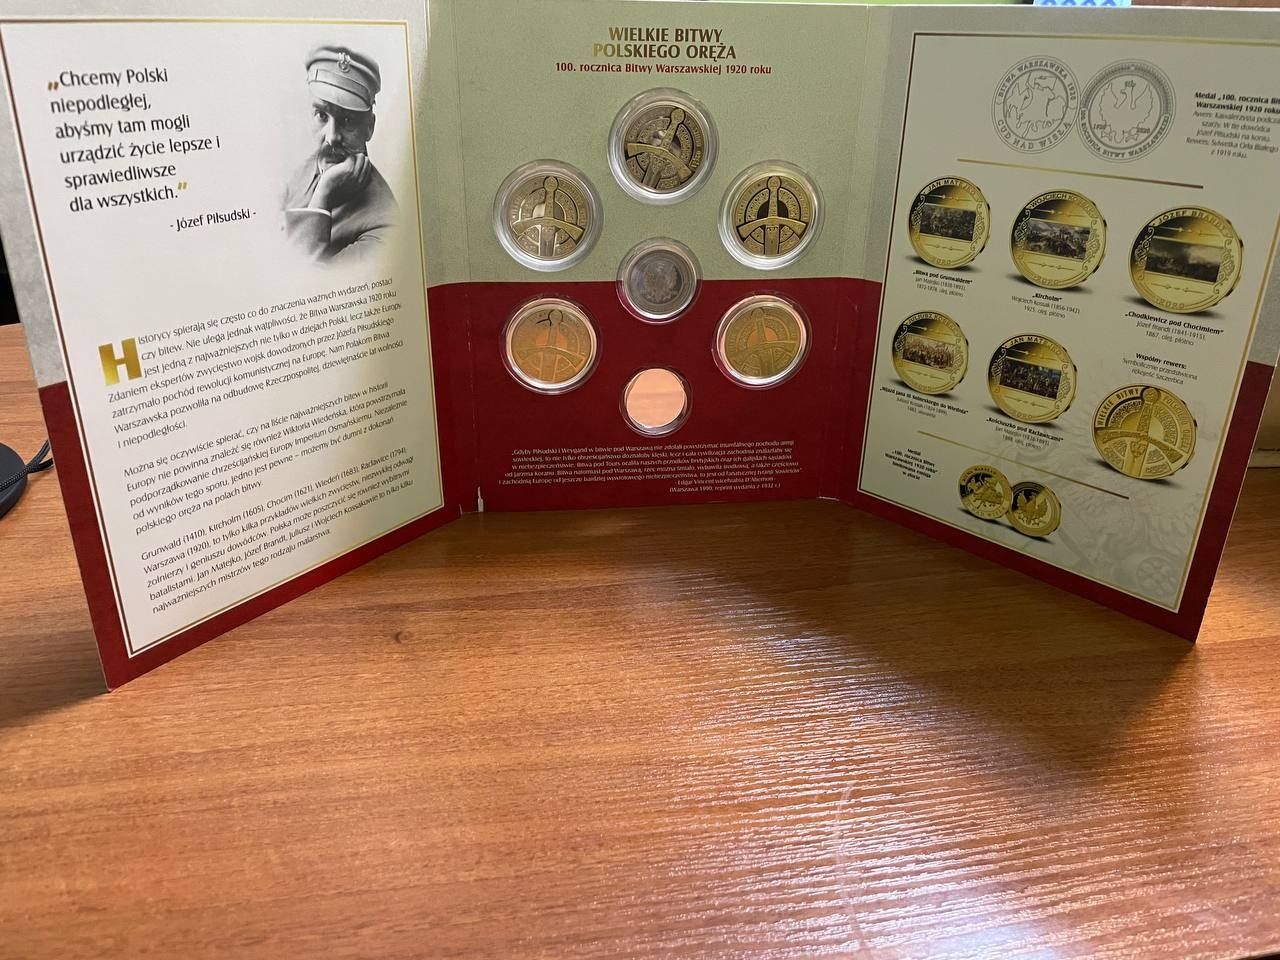 Kolekcja monet "Bitwa Polskiego Oręża"